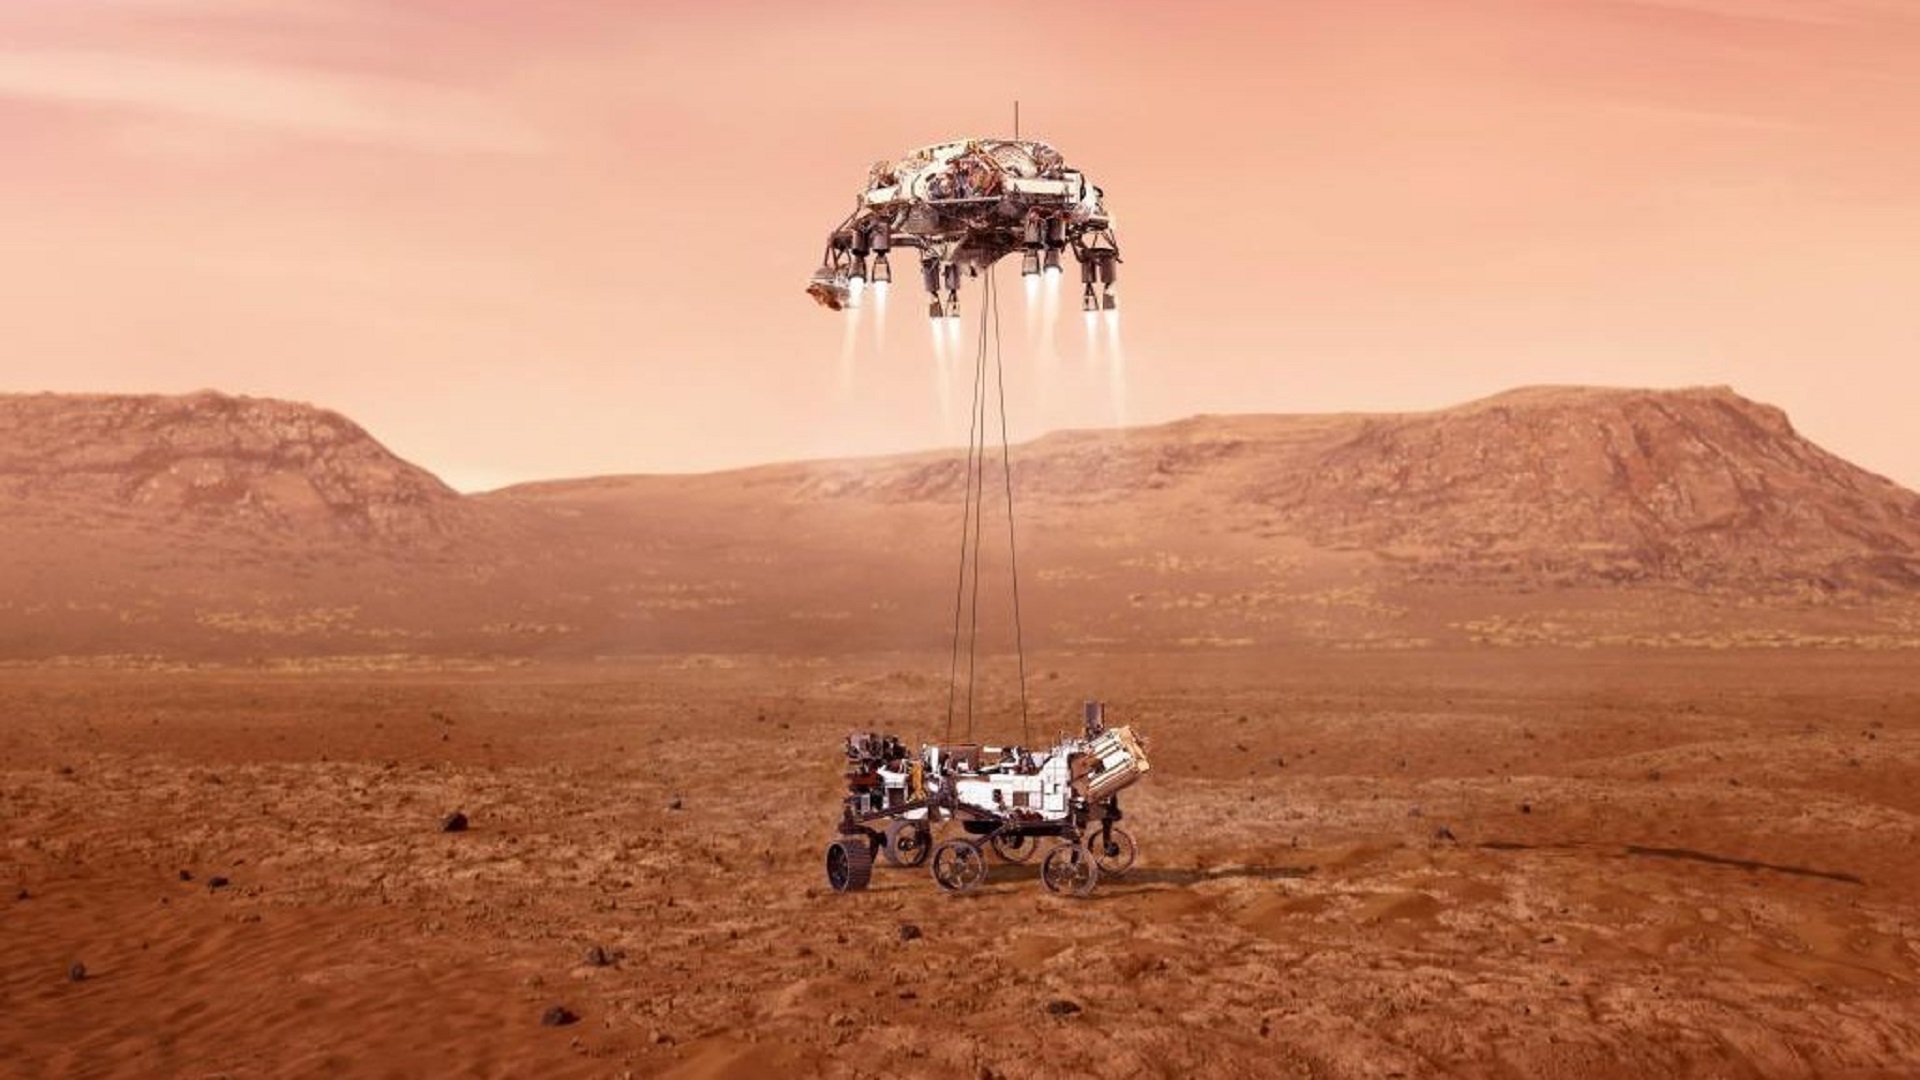 El video del Mars Perseverance rover que circula en redes es falso